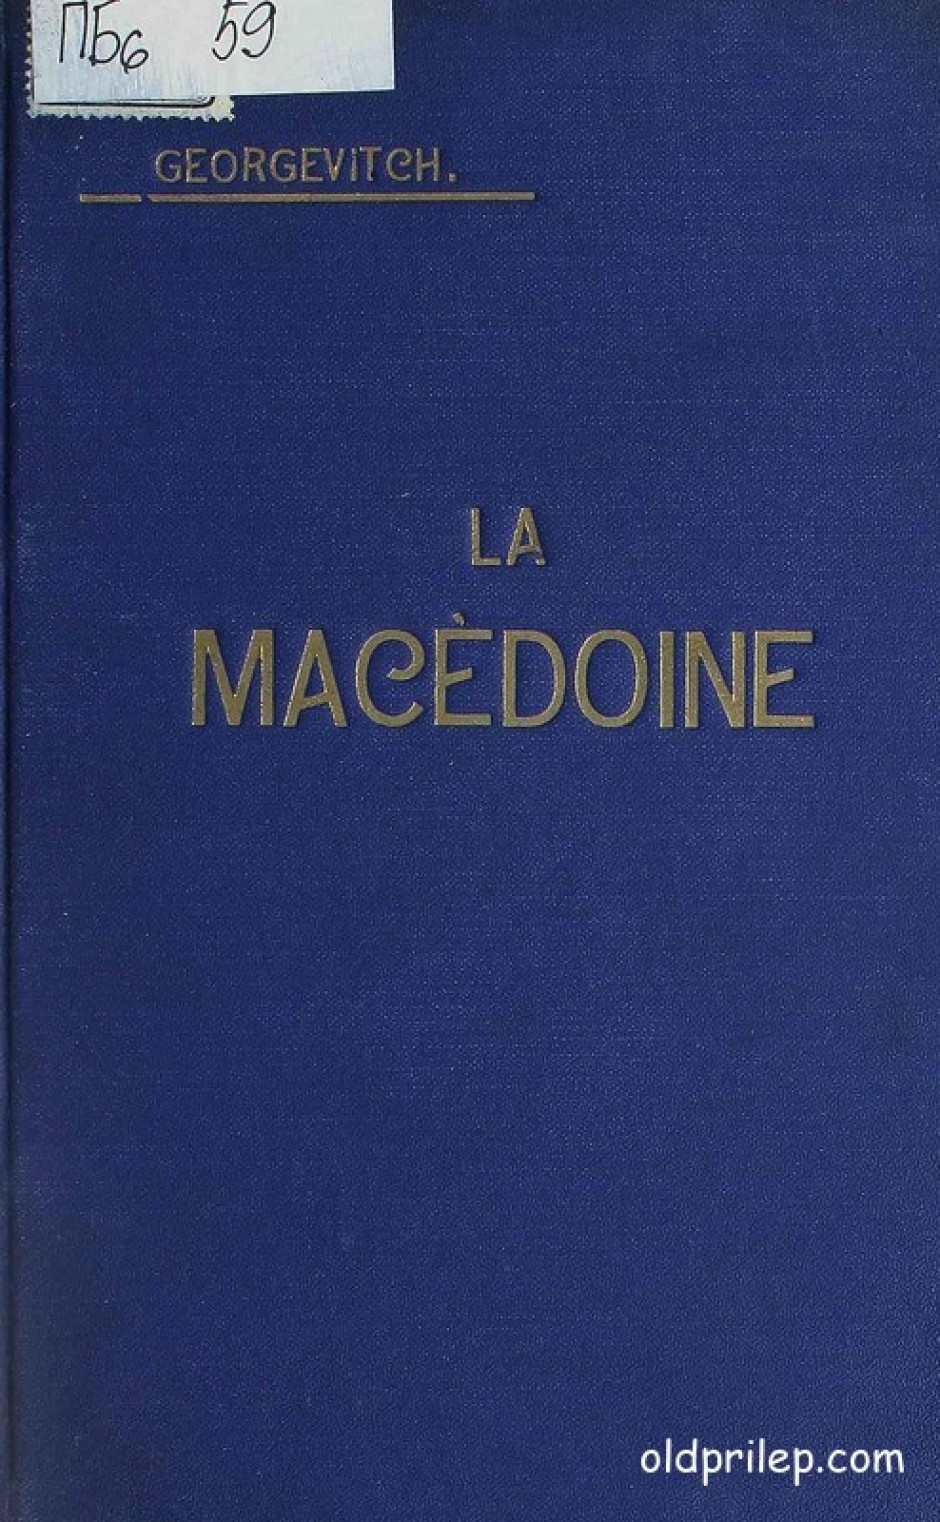 Тихомир Ѓорѓевиќ: „Македонија“, 1918 година